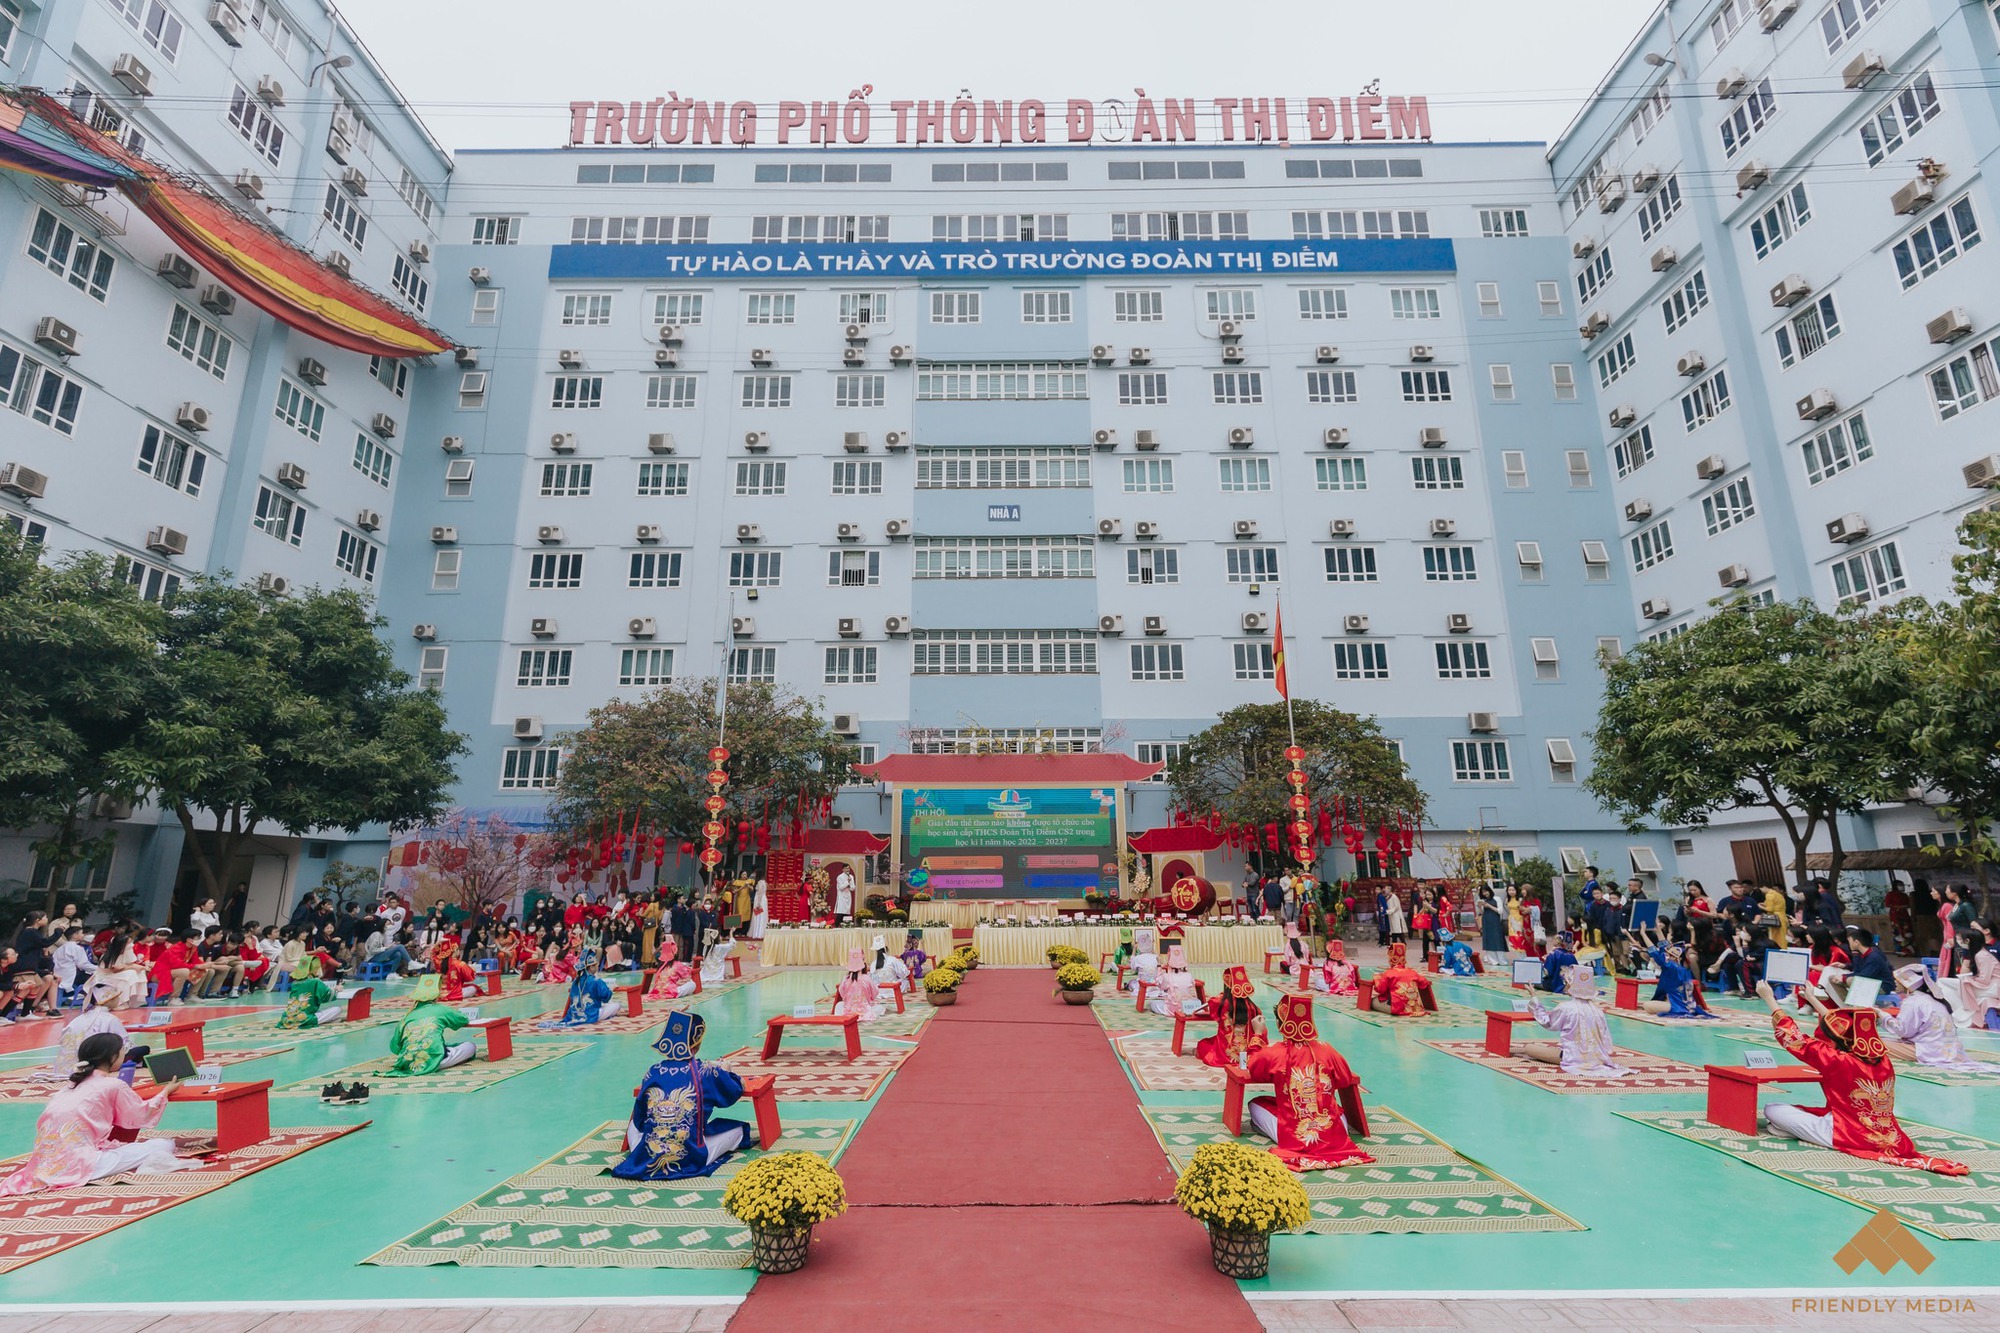 Tham khảo điểm chuẩn Trường THPT Đoàn Thị Điểm và loạt các trường tư thục ở Hà Nội - Ảnh 1.